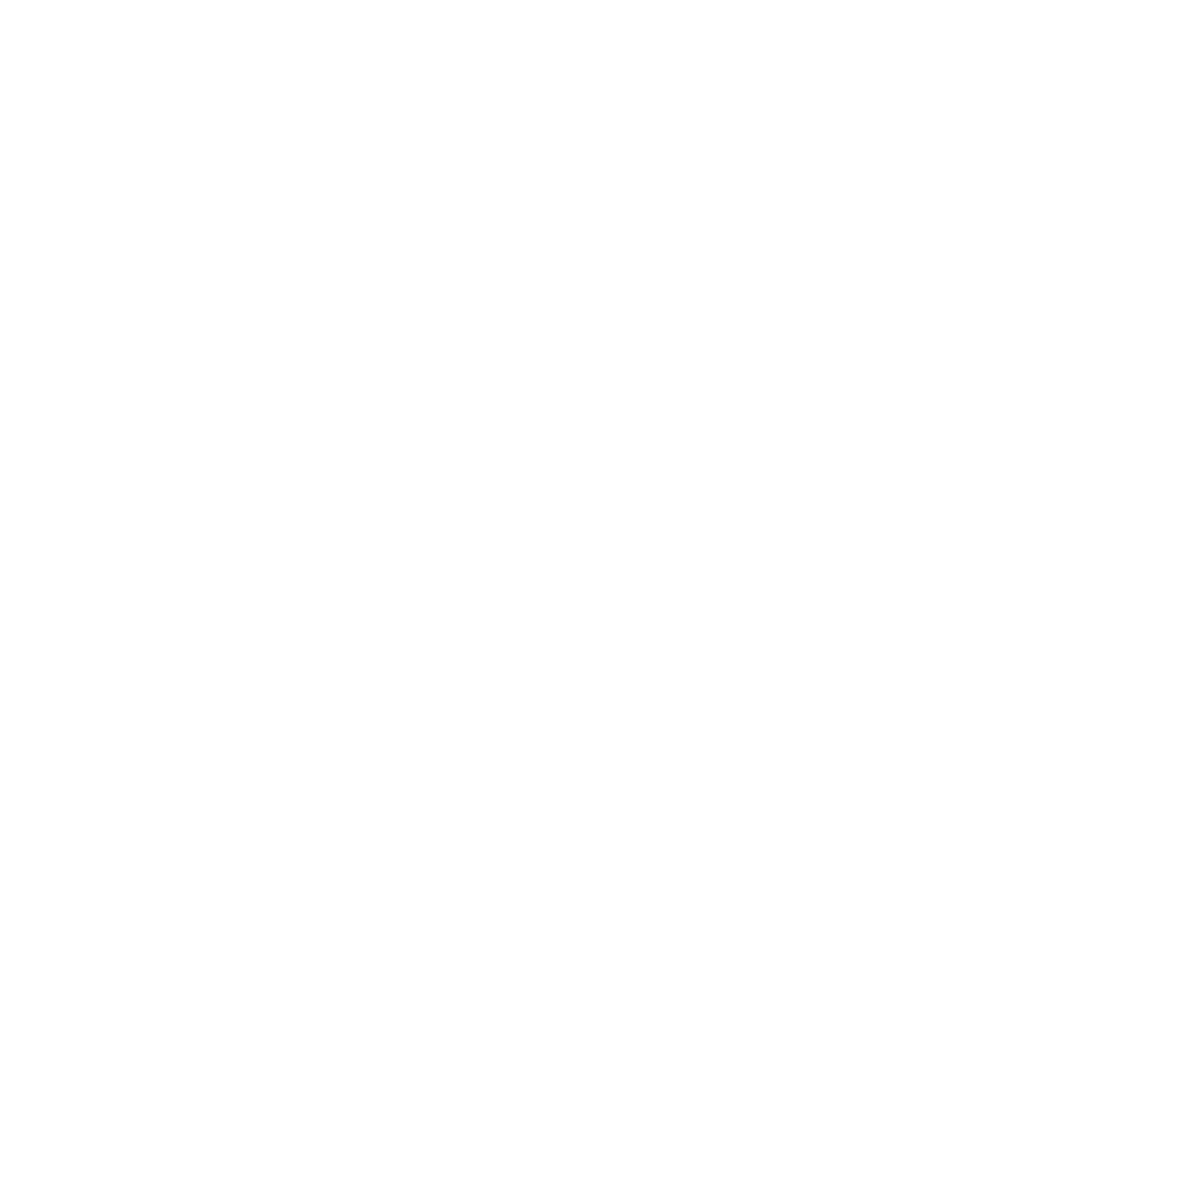 Ladies of Burlesque